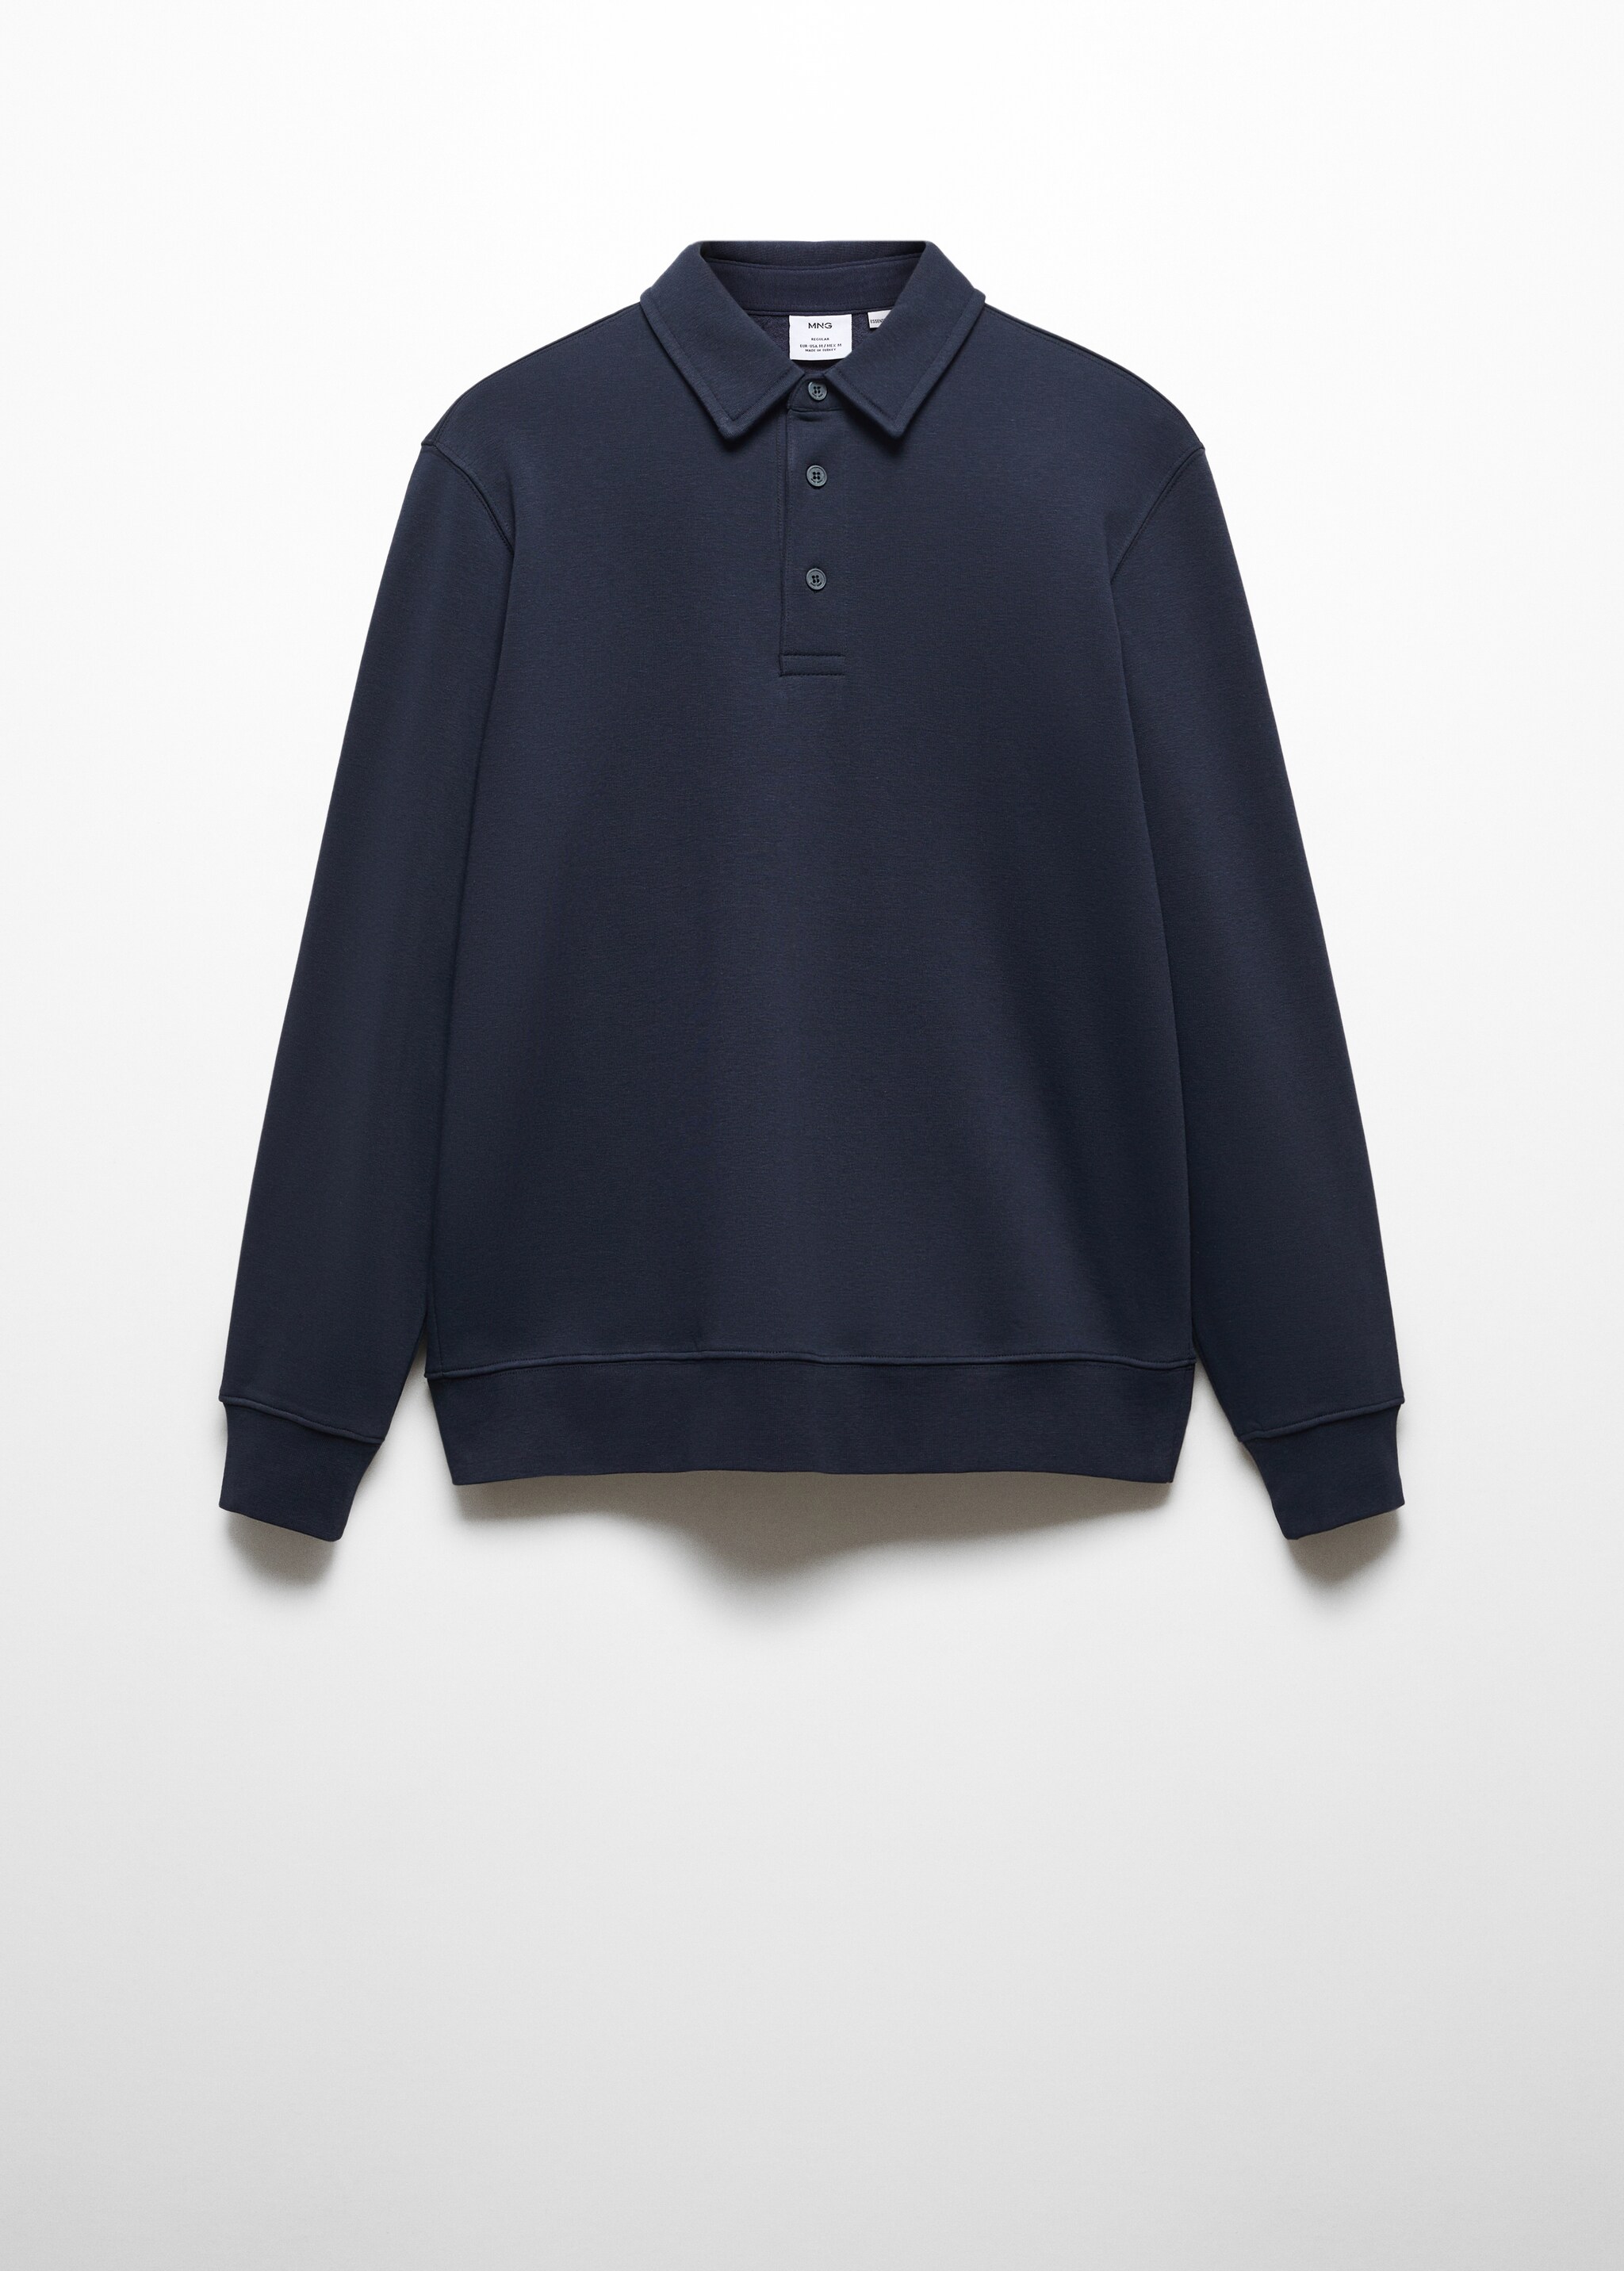 Sweatshirt polo de algodão - Artigo sem modelo